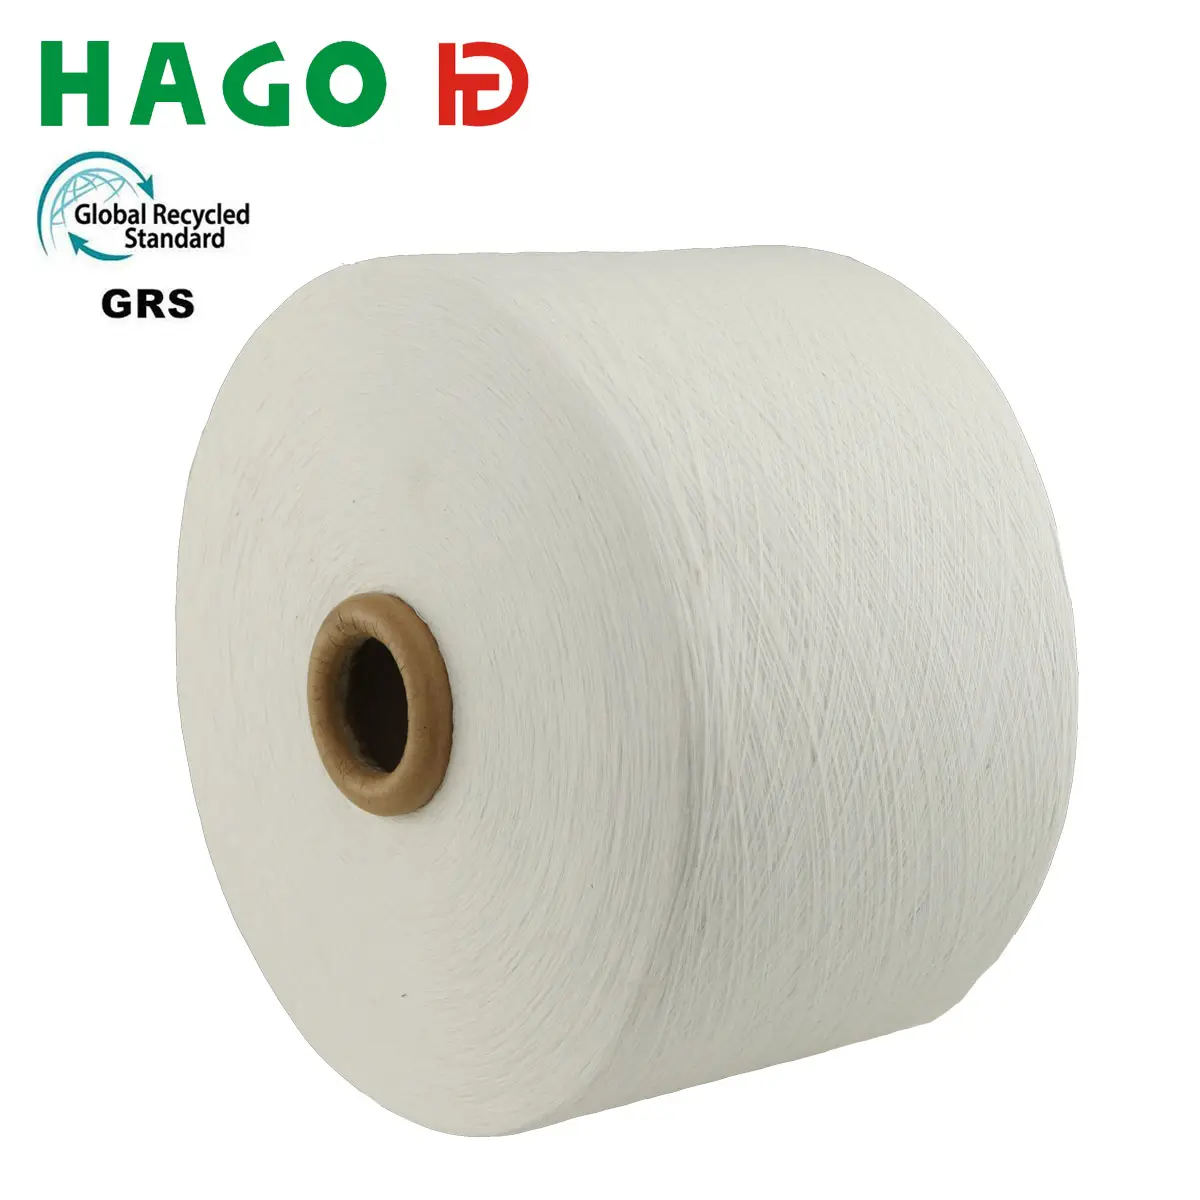 HAGO fil de coton en gros coton cardé biologique fabricant fils pour tricoter des chaussettes tissu fil de coton recyclé